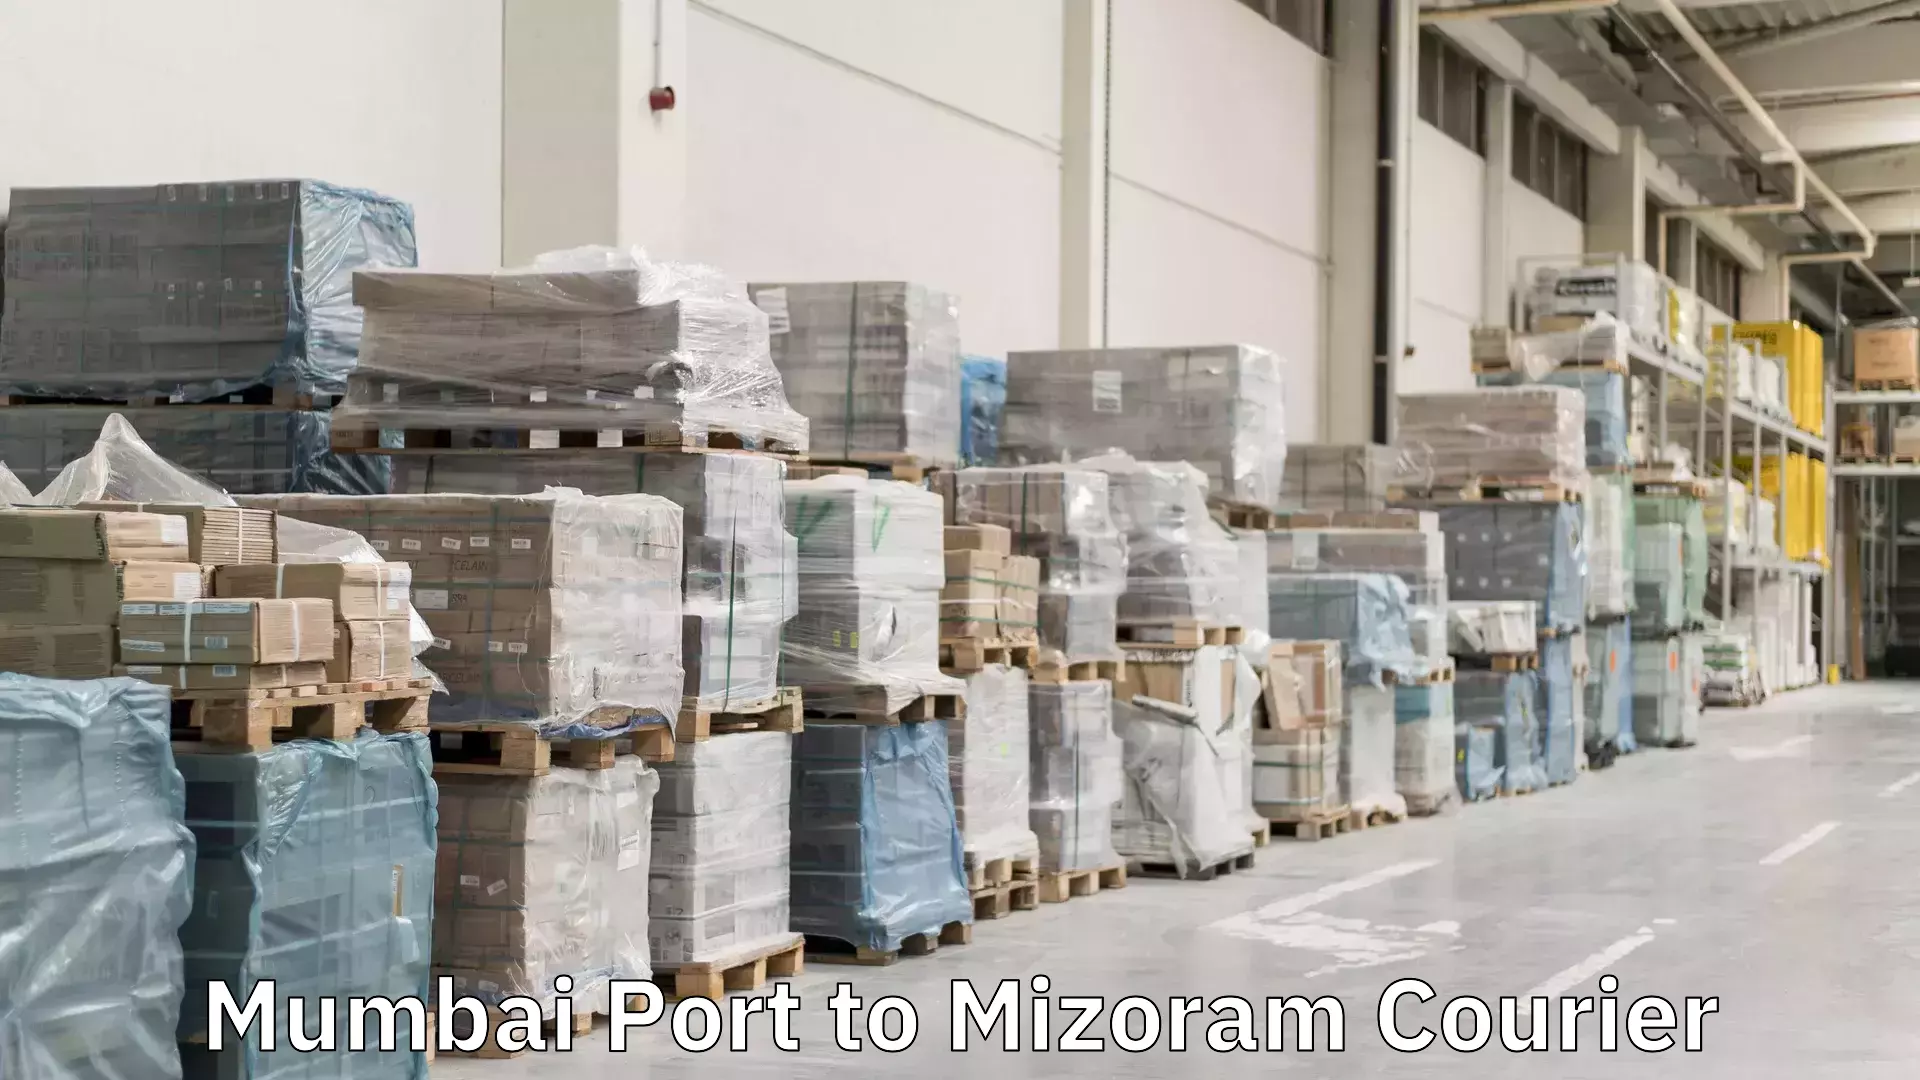 Express mail solutions Mumbai Port to Mizoram